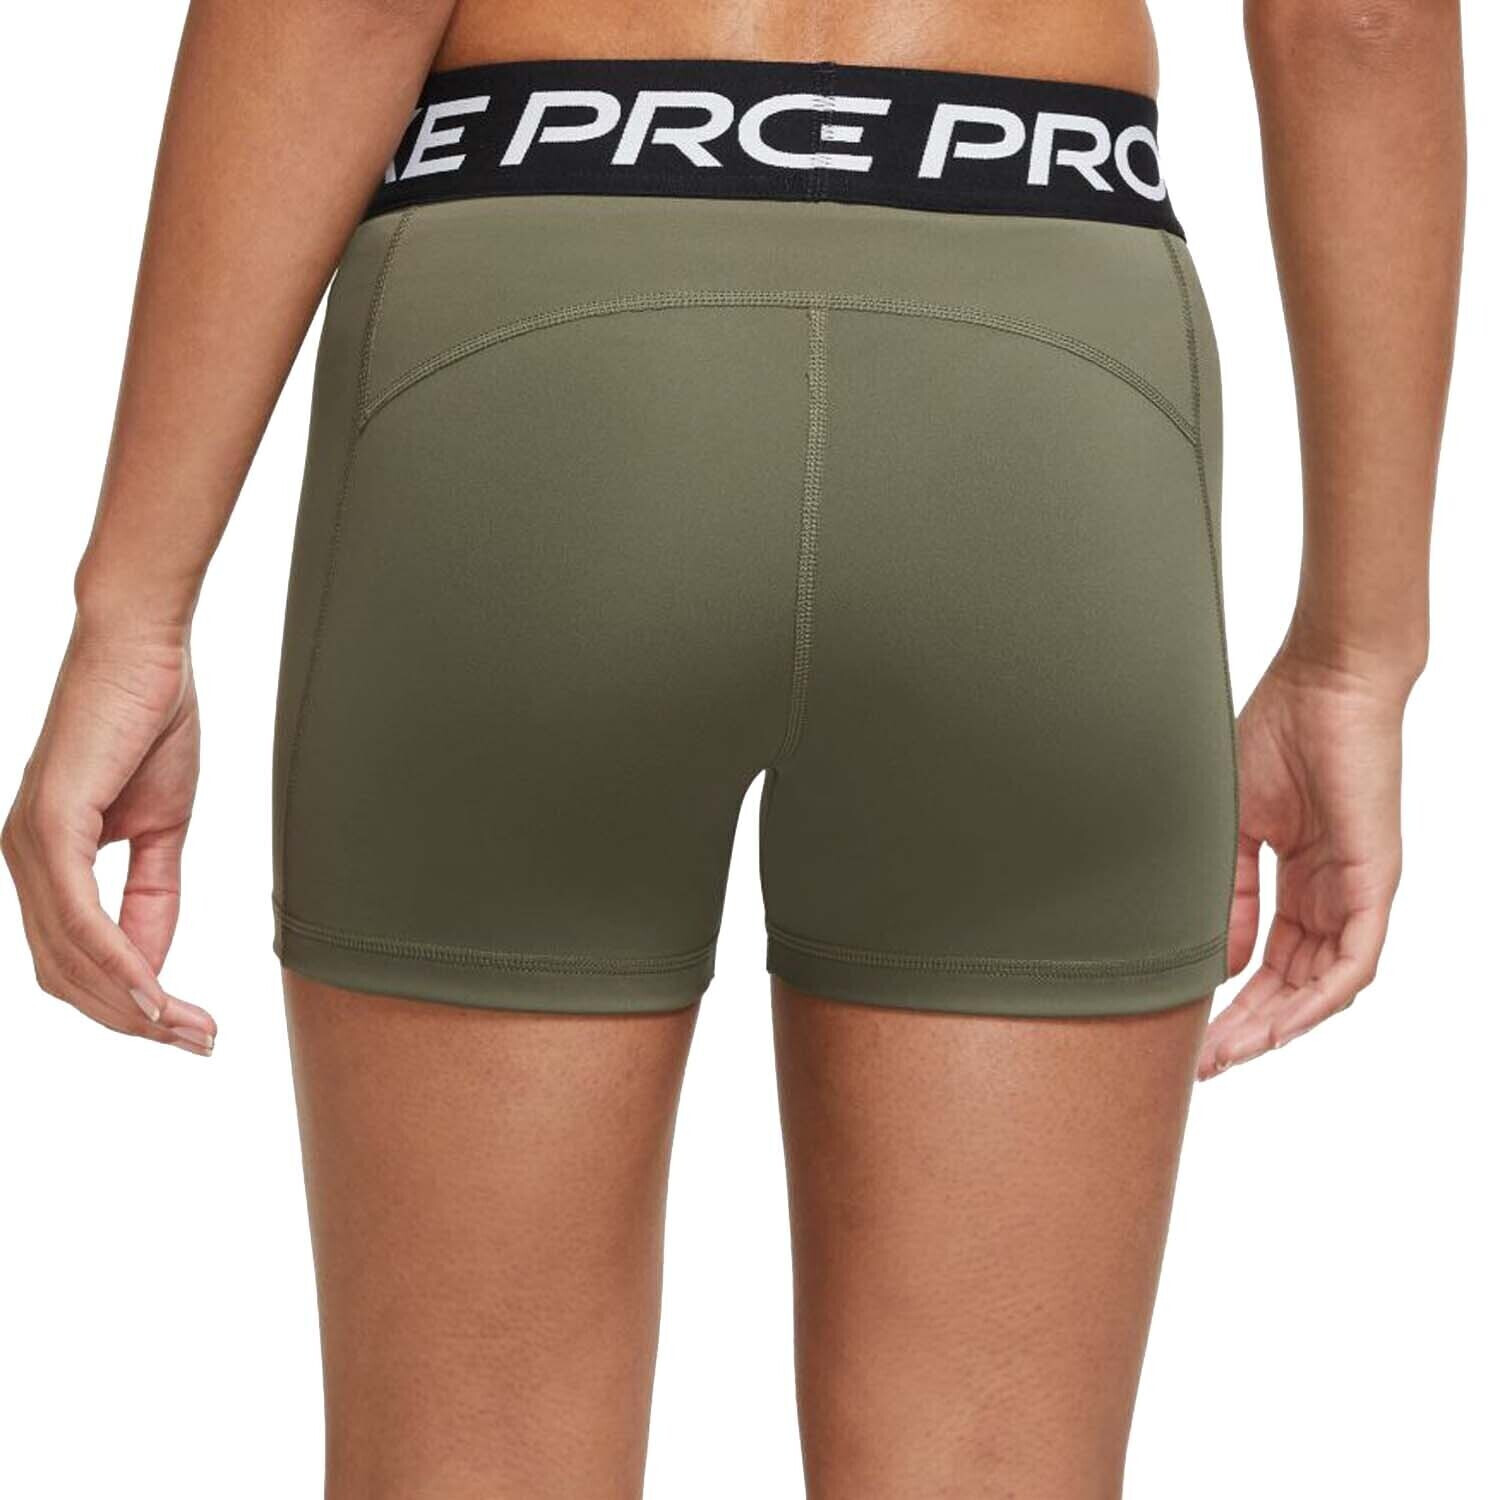 Nike Pro Shorts Women